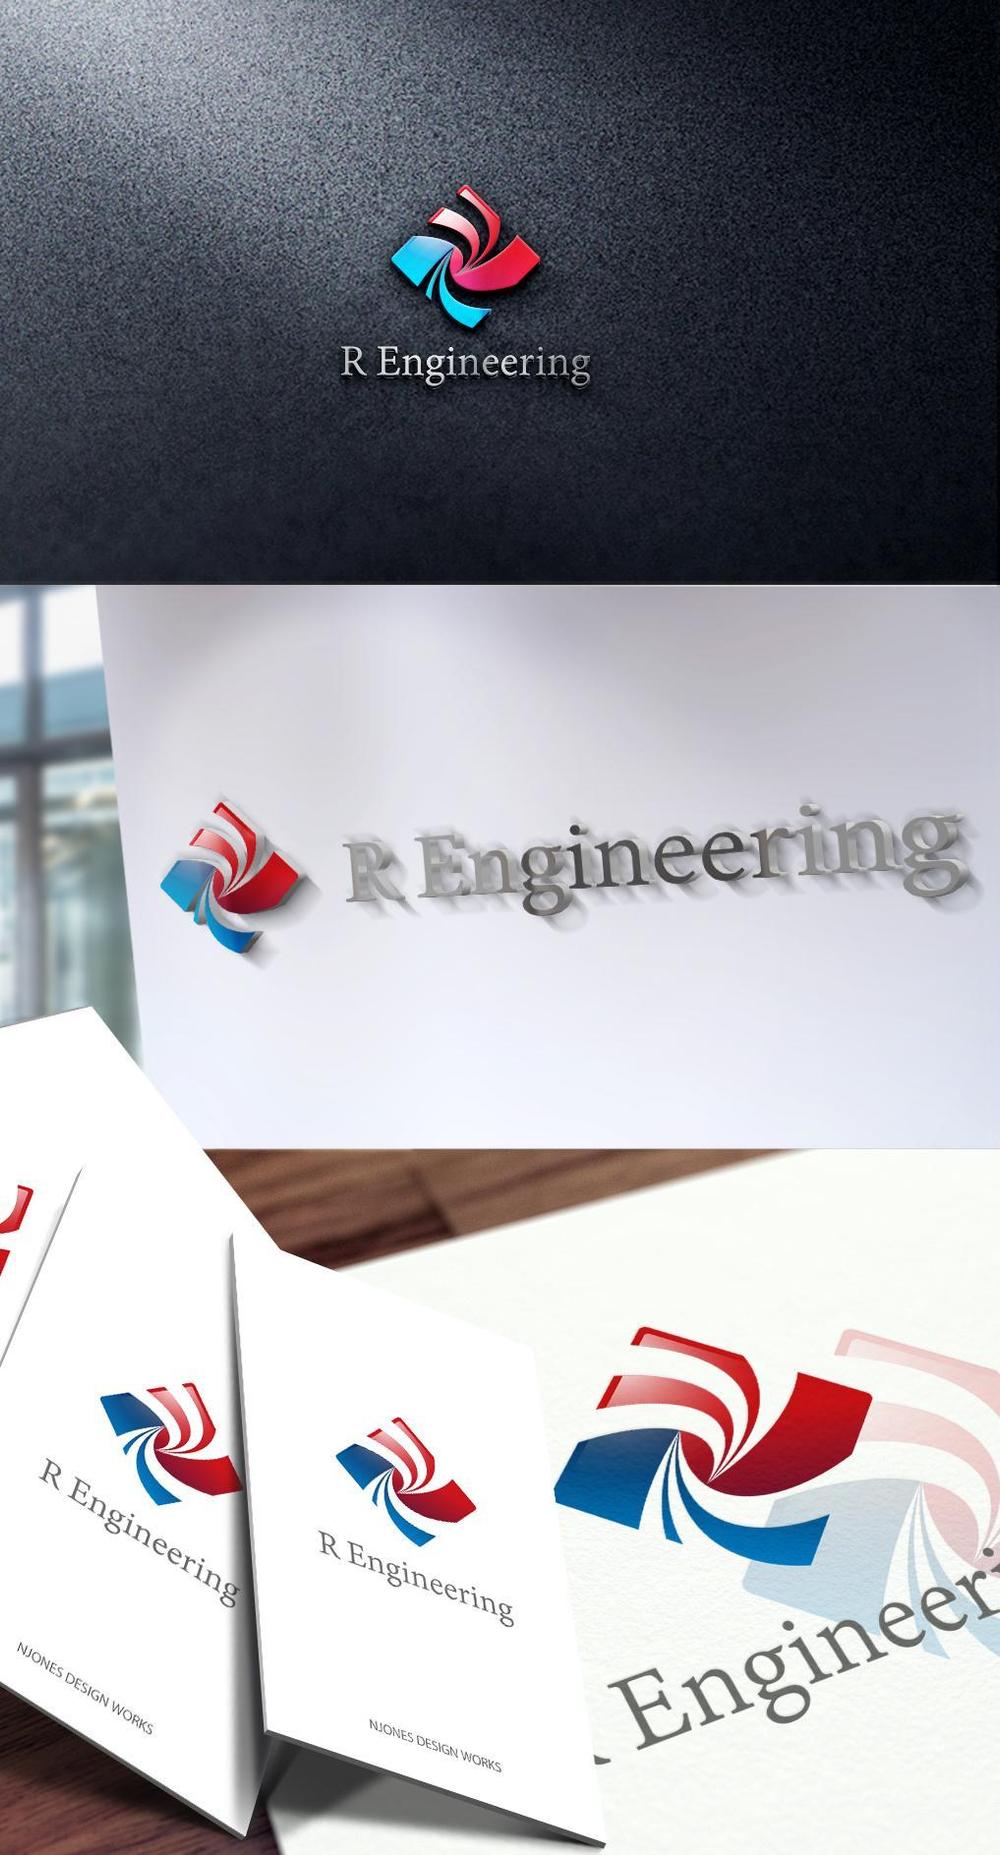 ソフトウェア開発会社「R Engineering」のロゴ